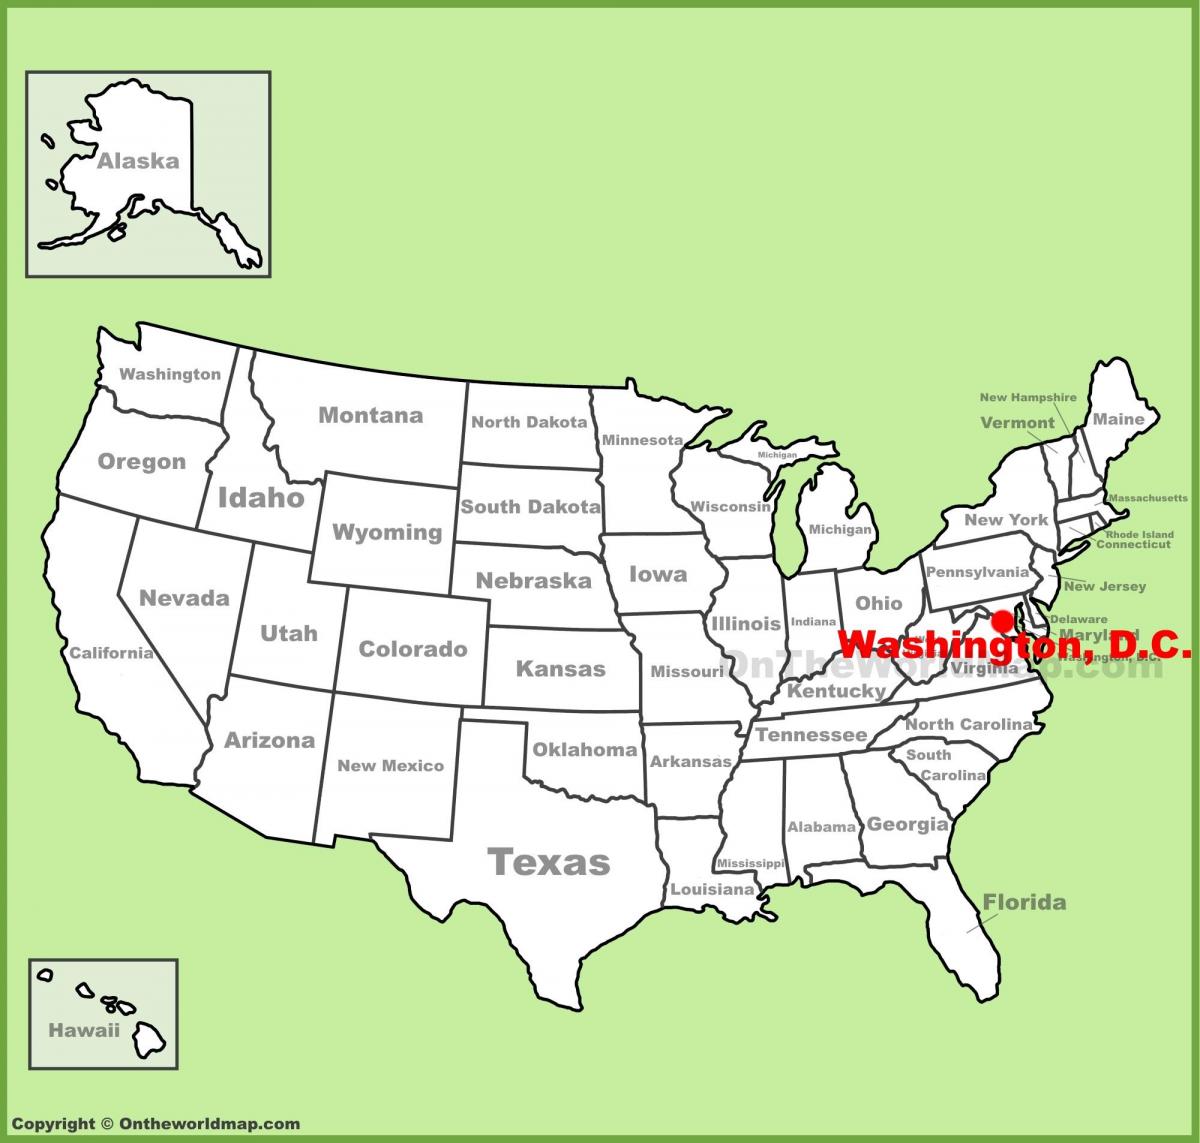 વોશિંગ્ટન ડીસી સ્થિત યુનાઇટેડ સ્ટેટ્સ નકશો